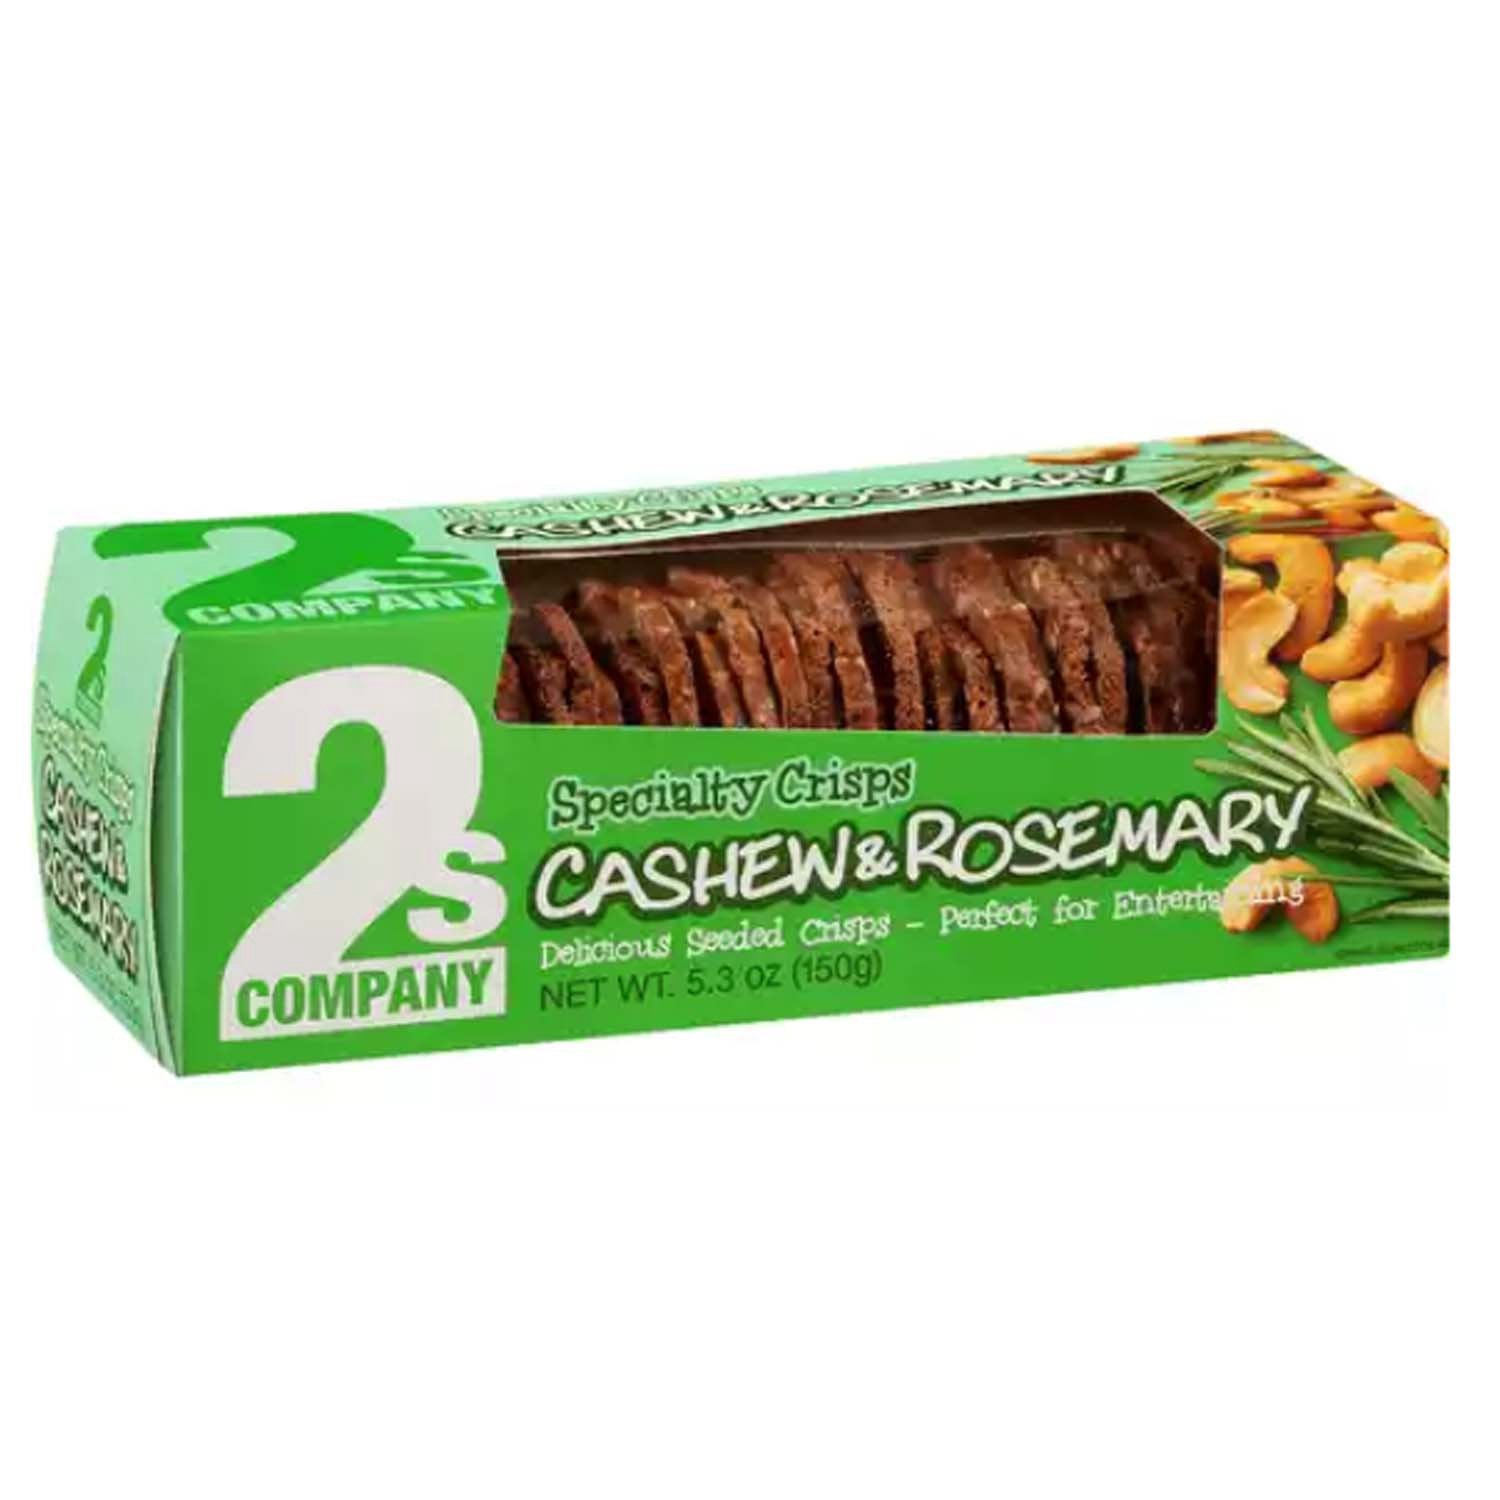 2s Company Cashew & Rosemary Specialty Crisps 5.3oz